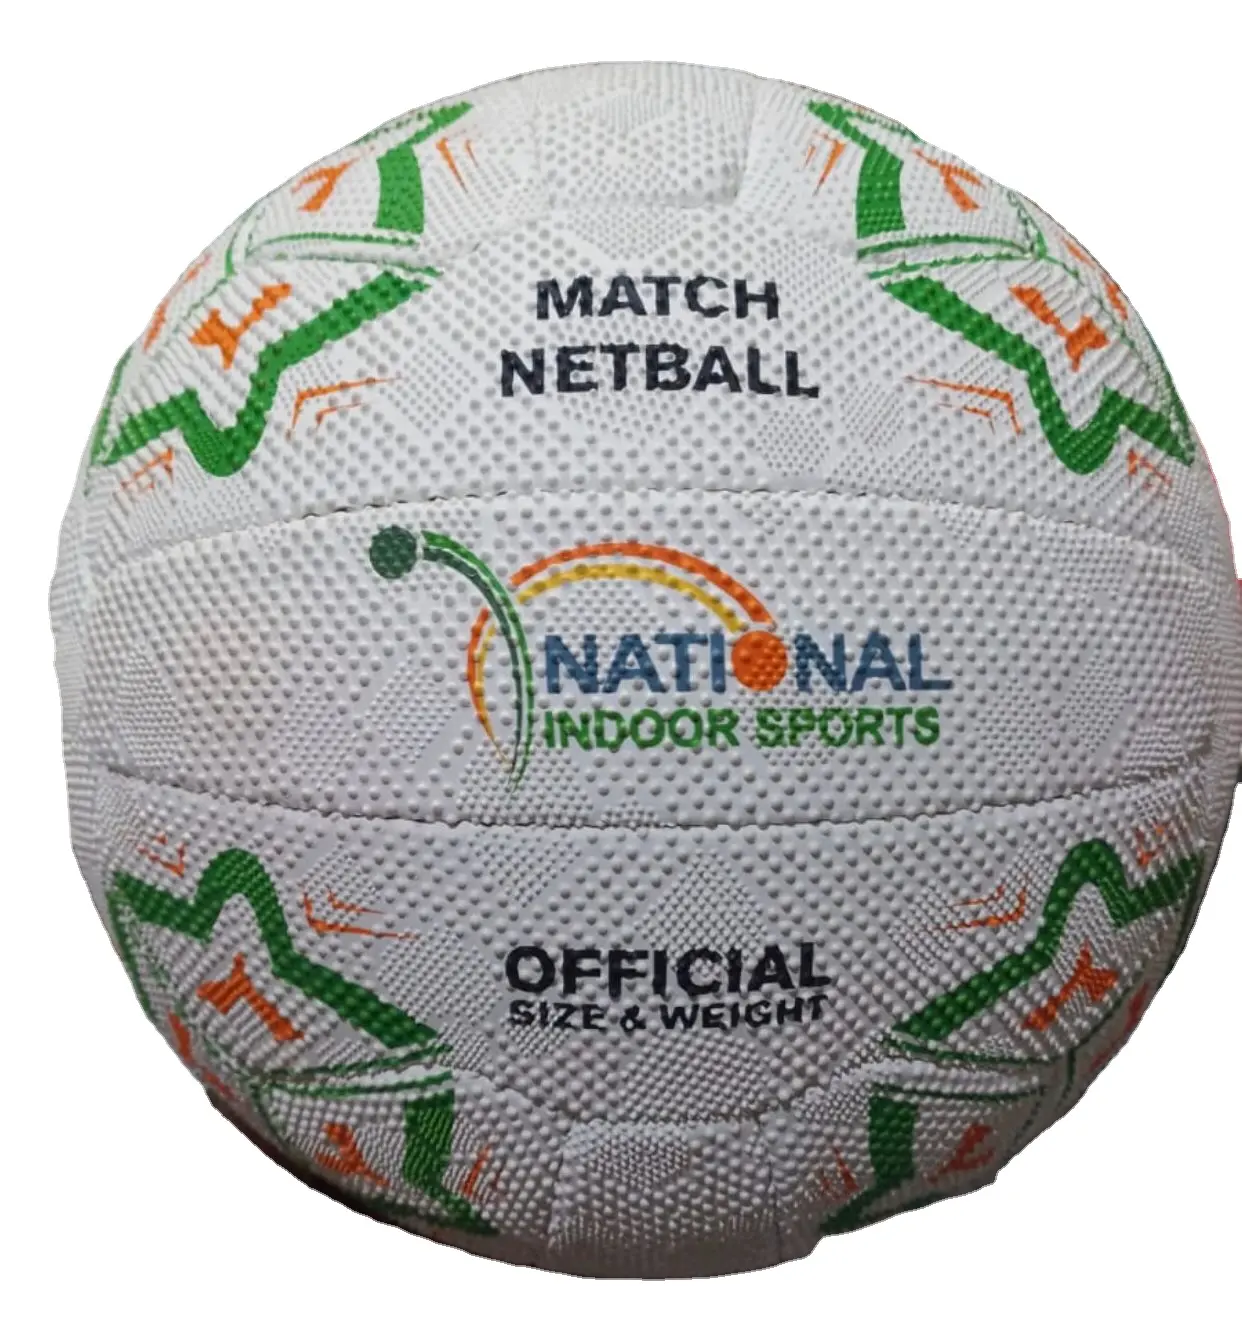 Super Deal Sell Net Ball, Beach Volley Ball, Pro Volley Ball